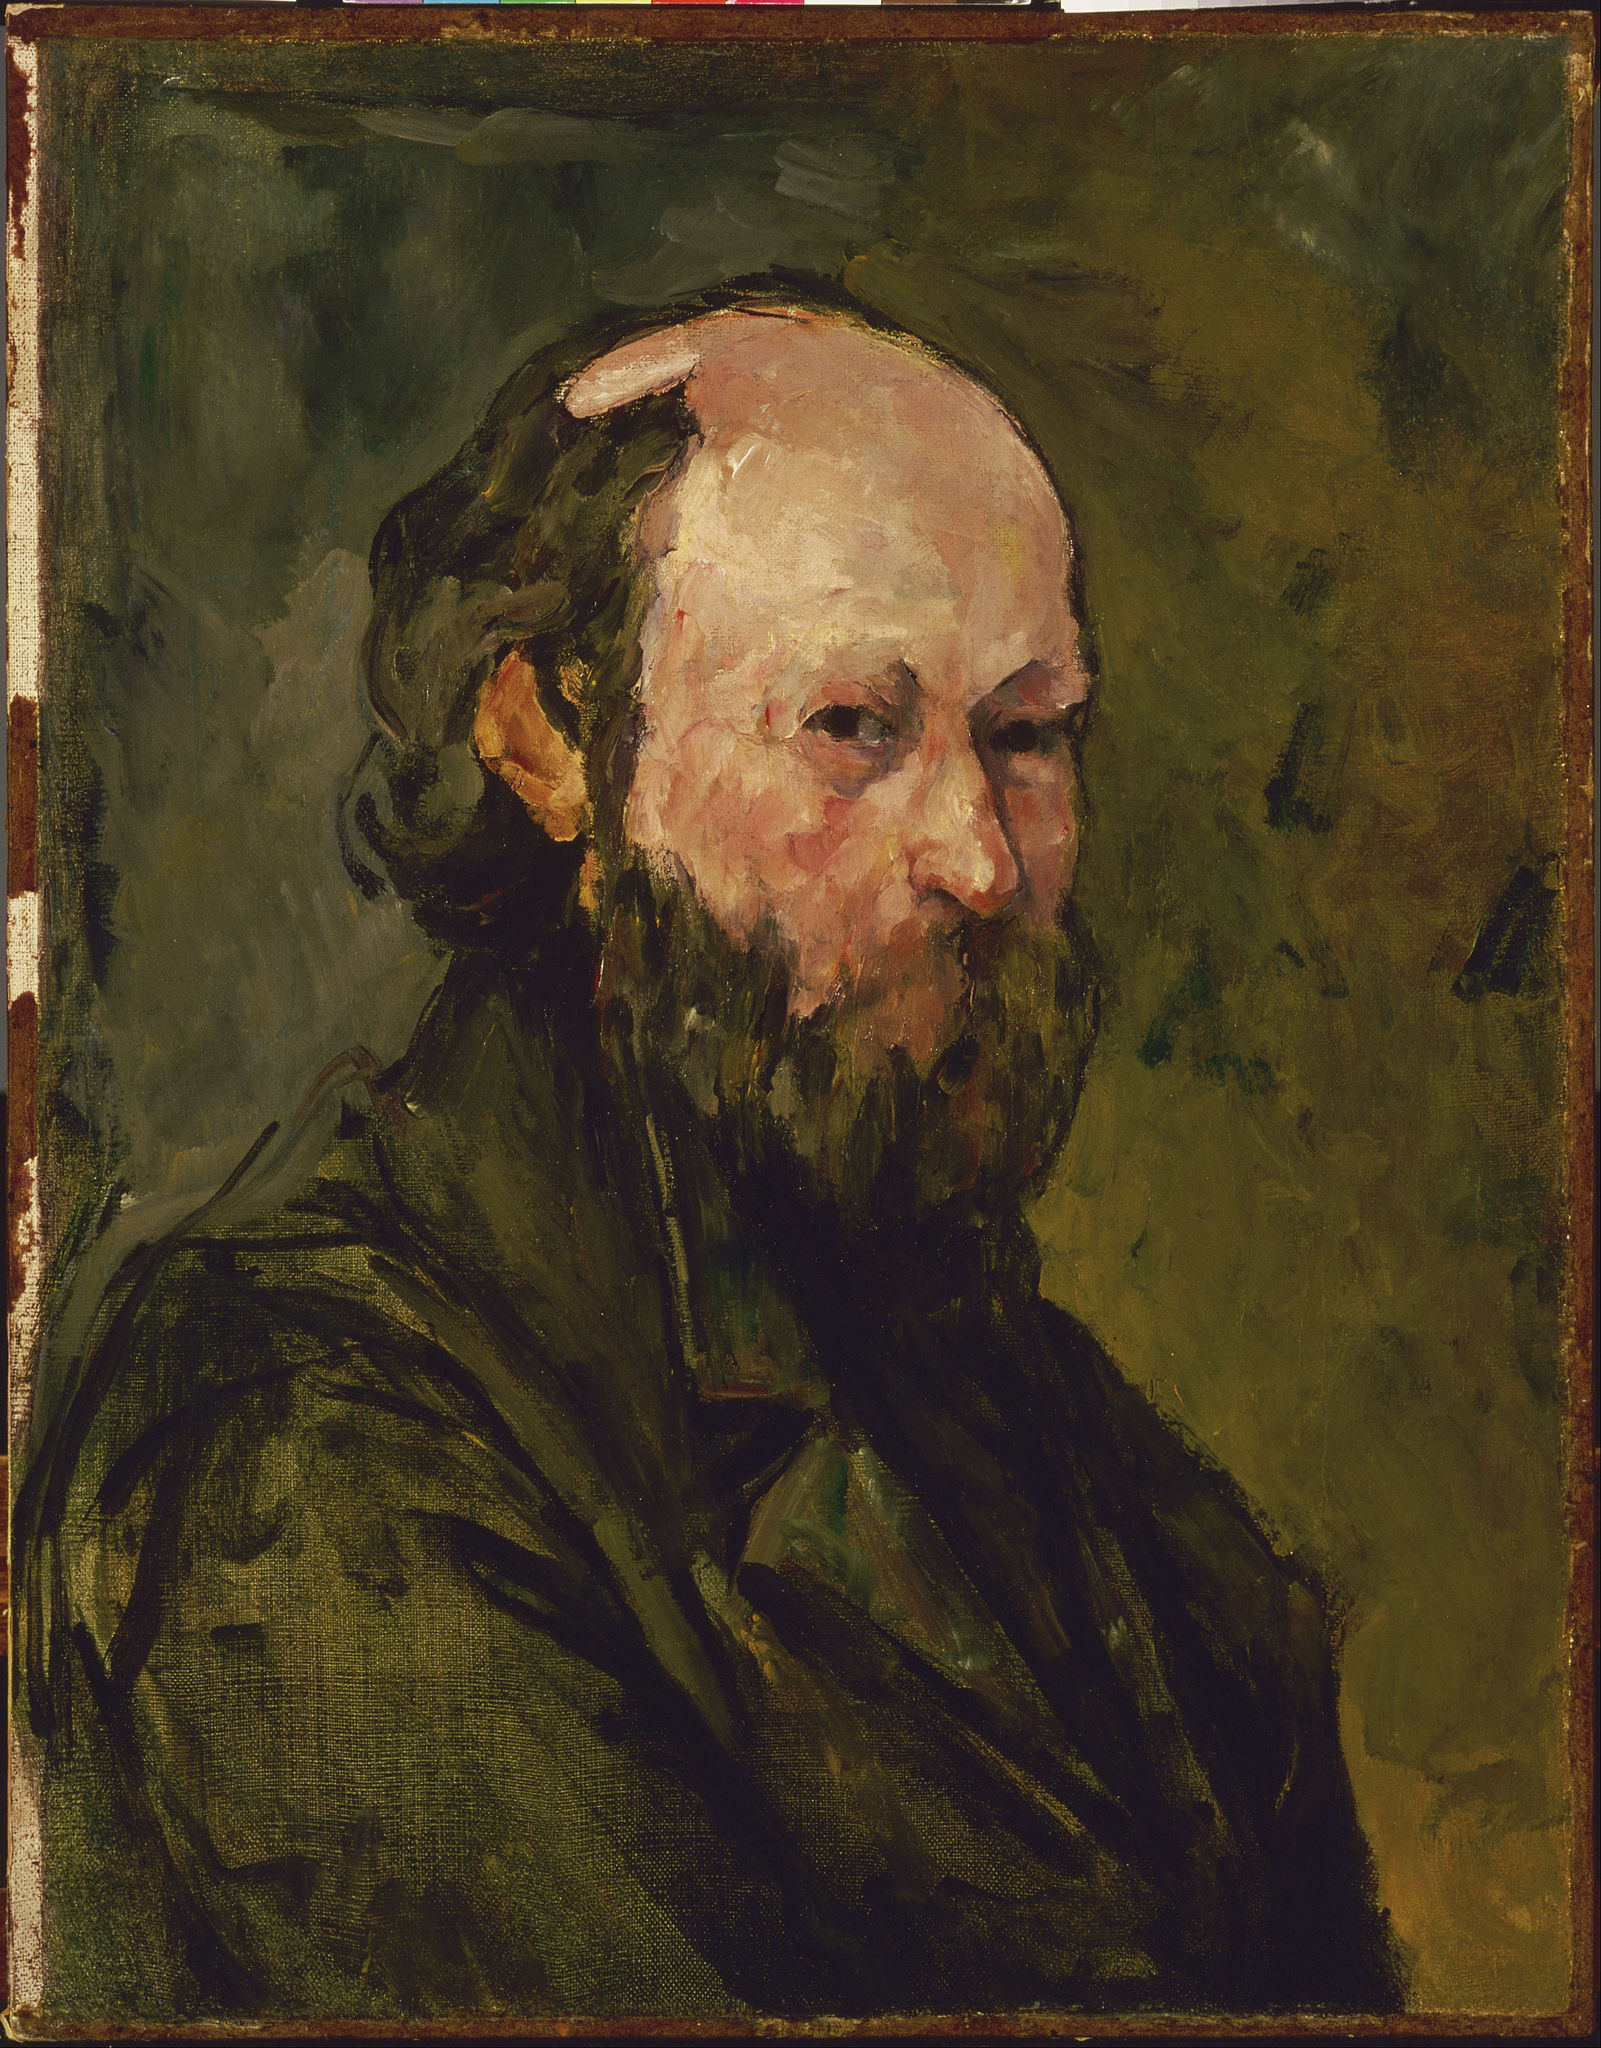 A self-portrait of Paul Cézanne